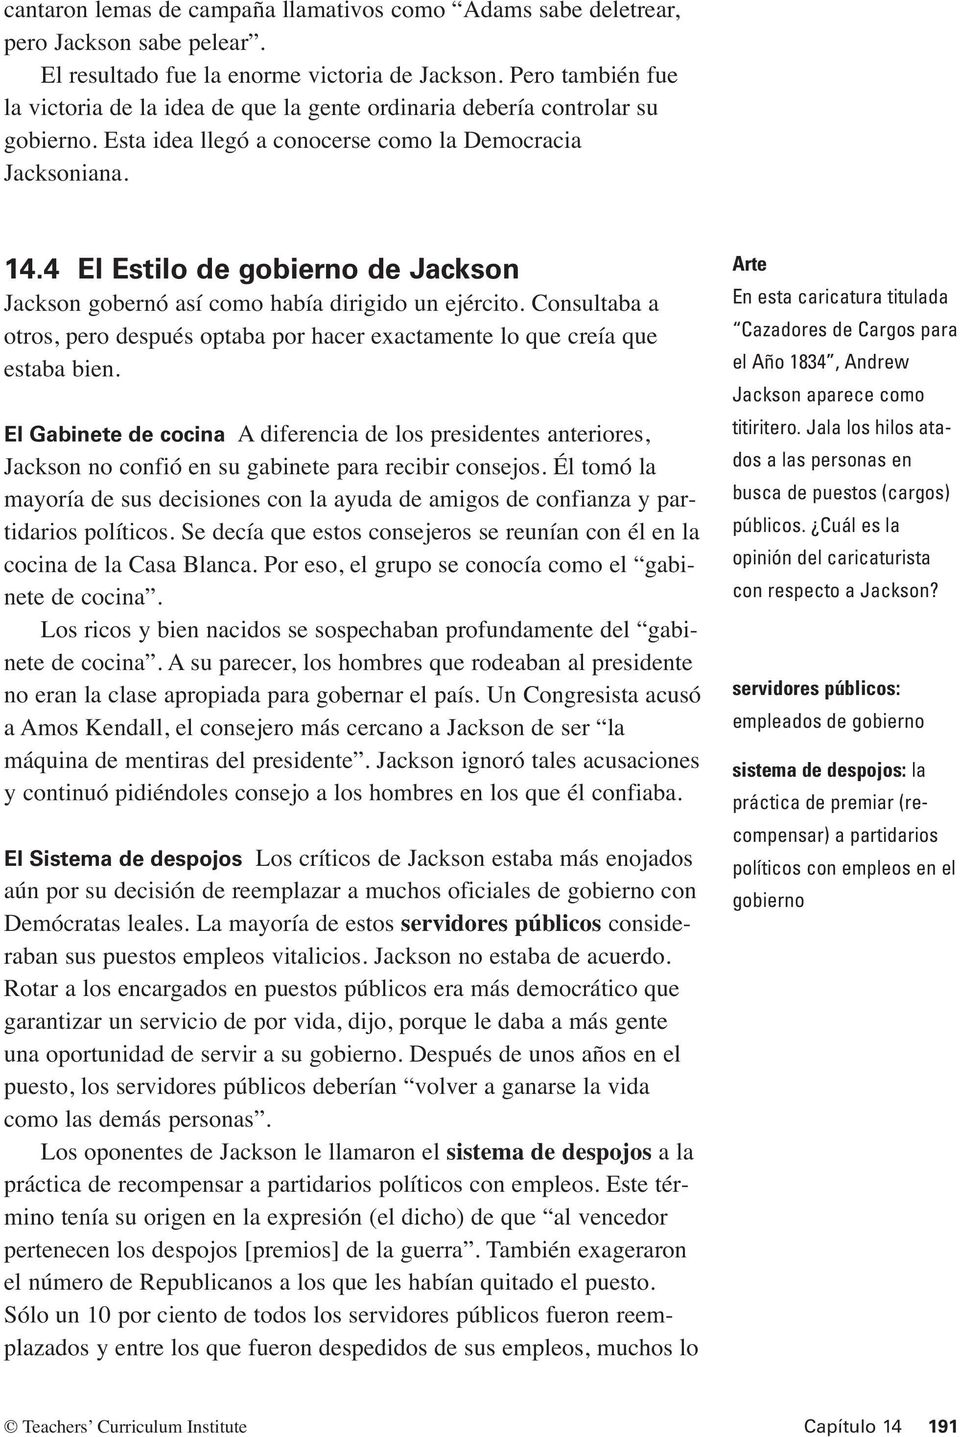 4 El Estilo de gobierno de Jackson Jackson gobernó así como había dirigido un ejército. Consultaba a otros, pero después optaba por hacer exactamente lo que creía que estaba bien.